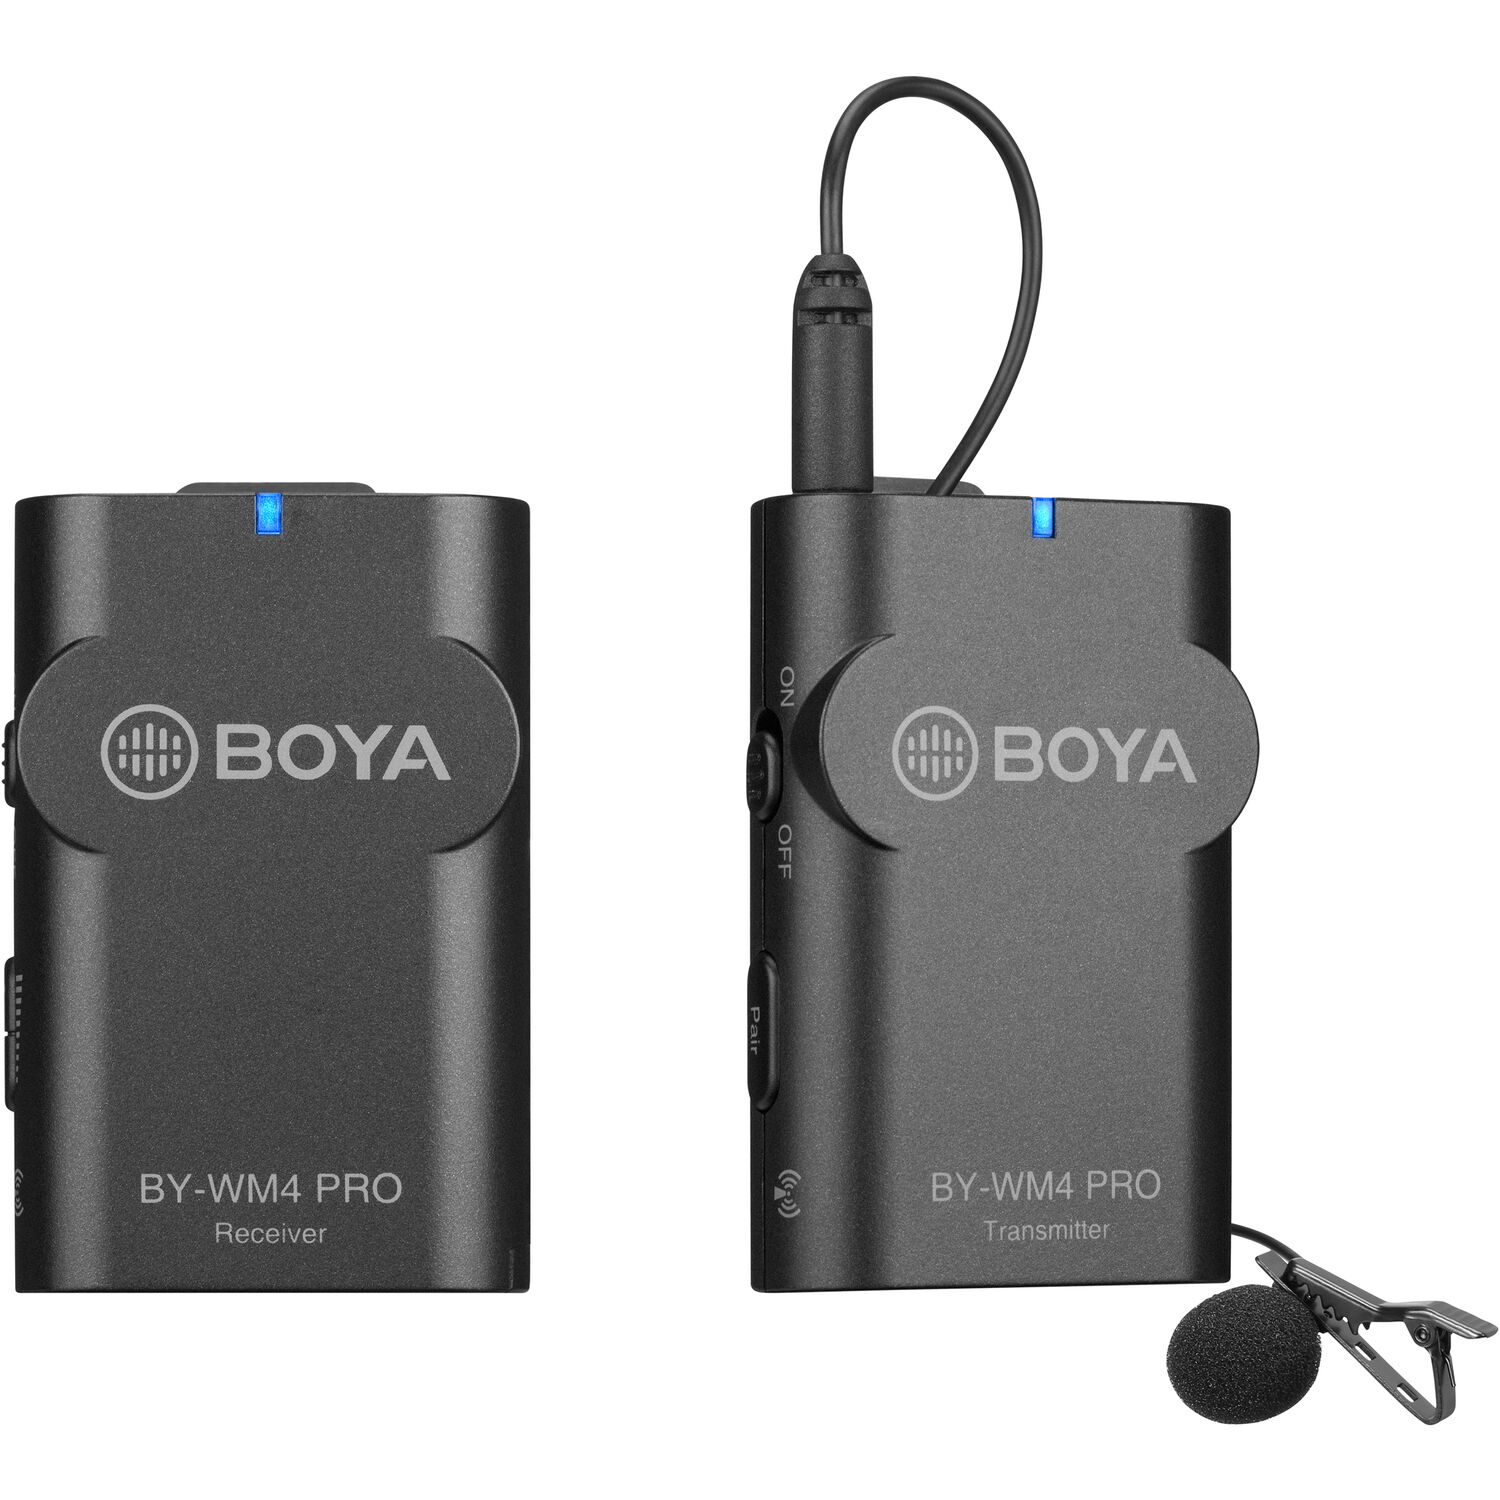 Boya BY-WM4 Pro-K1 Wireless Microphone ไมโครโฟนไร้สาย แบบไมค์เดี่ยว ใช้ได้ทั้งกล้องและมือถือ